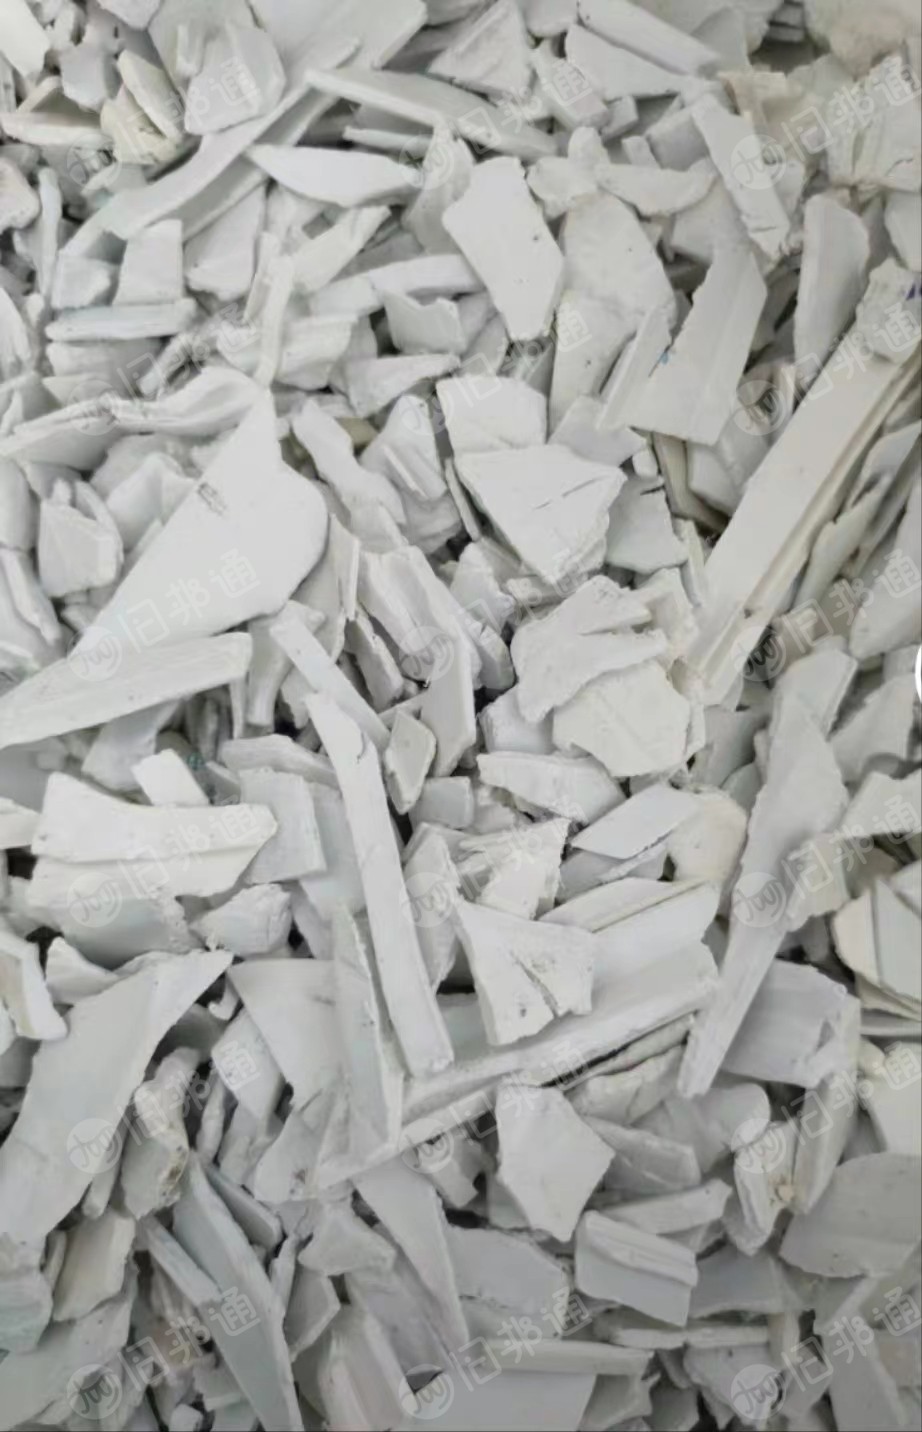 大量出售各种硬质PVC破碎料，扣板破碎料，大小管破碎料，塑钢破碎料，黄石塑破碎料等